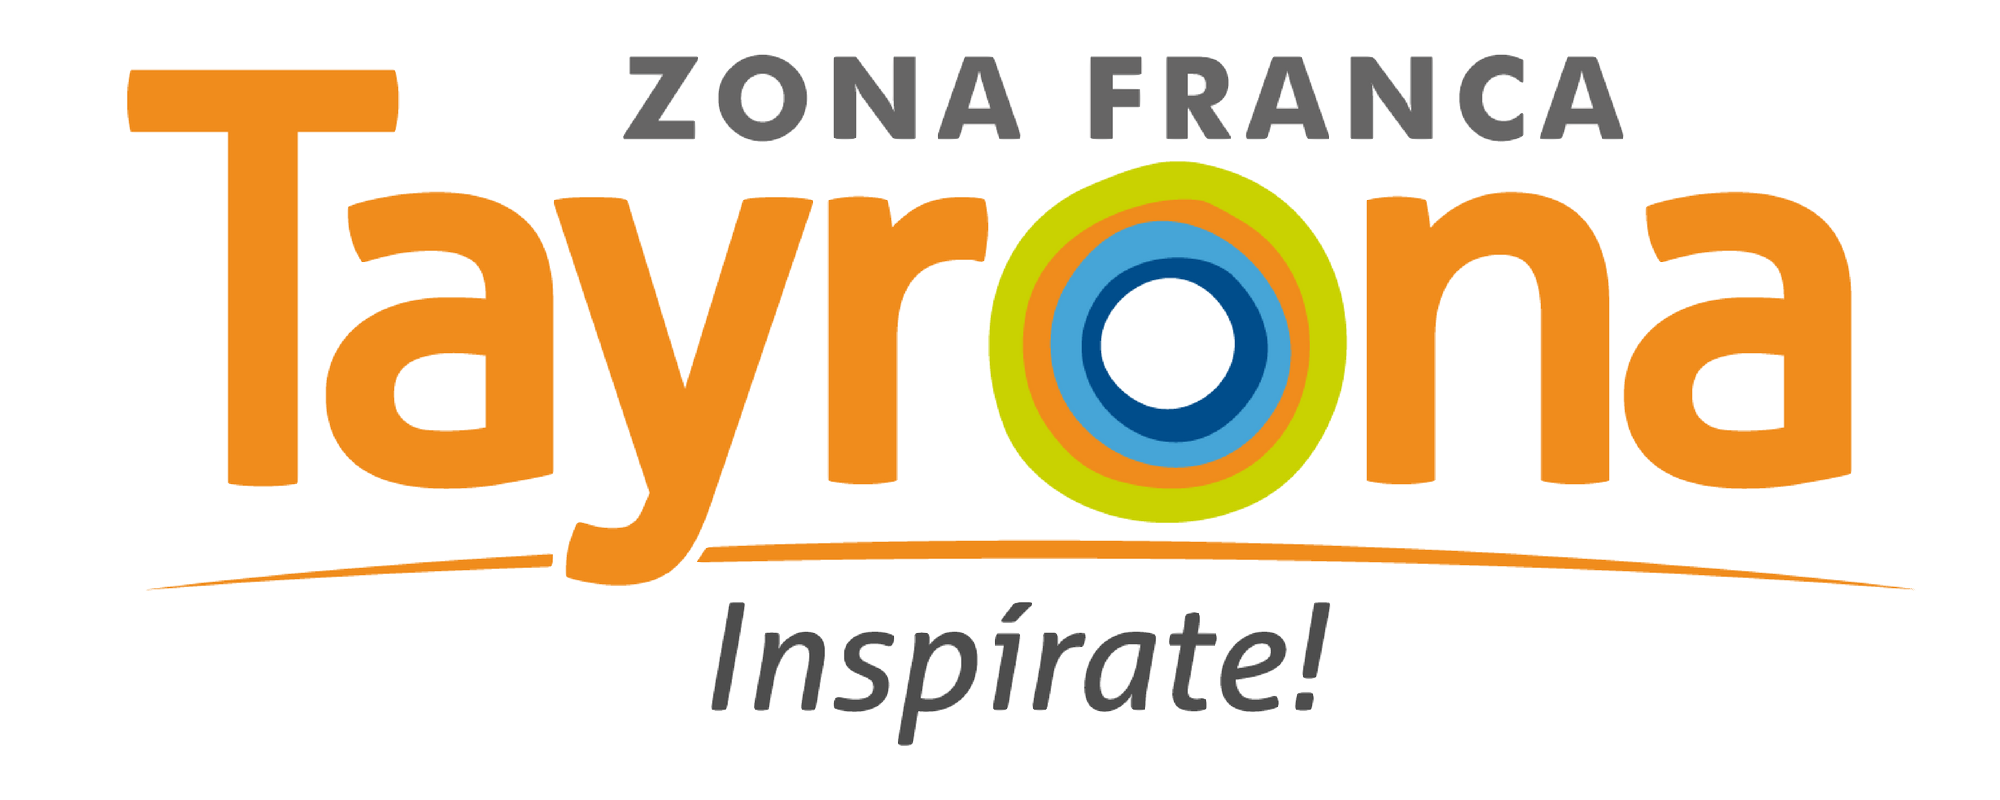 logo-de-Zona-Franca-Tayrona-en-png